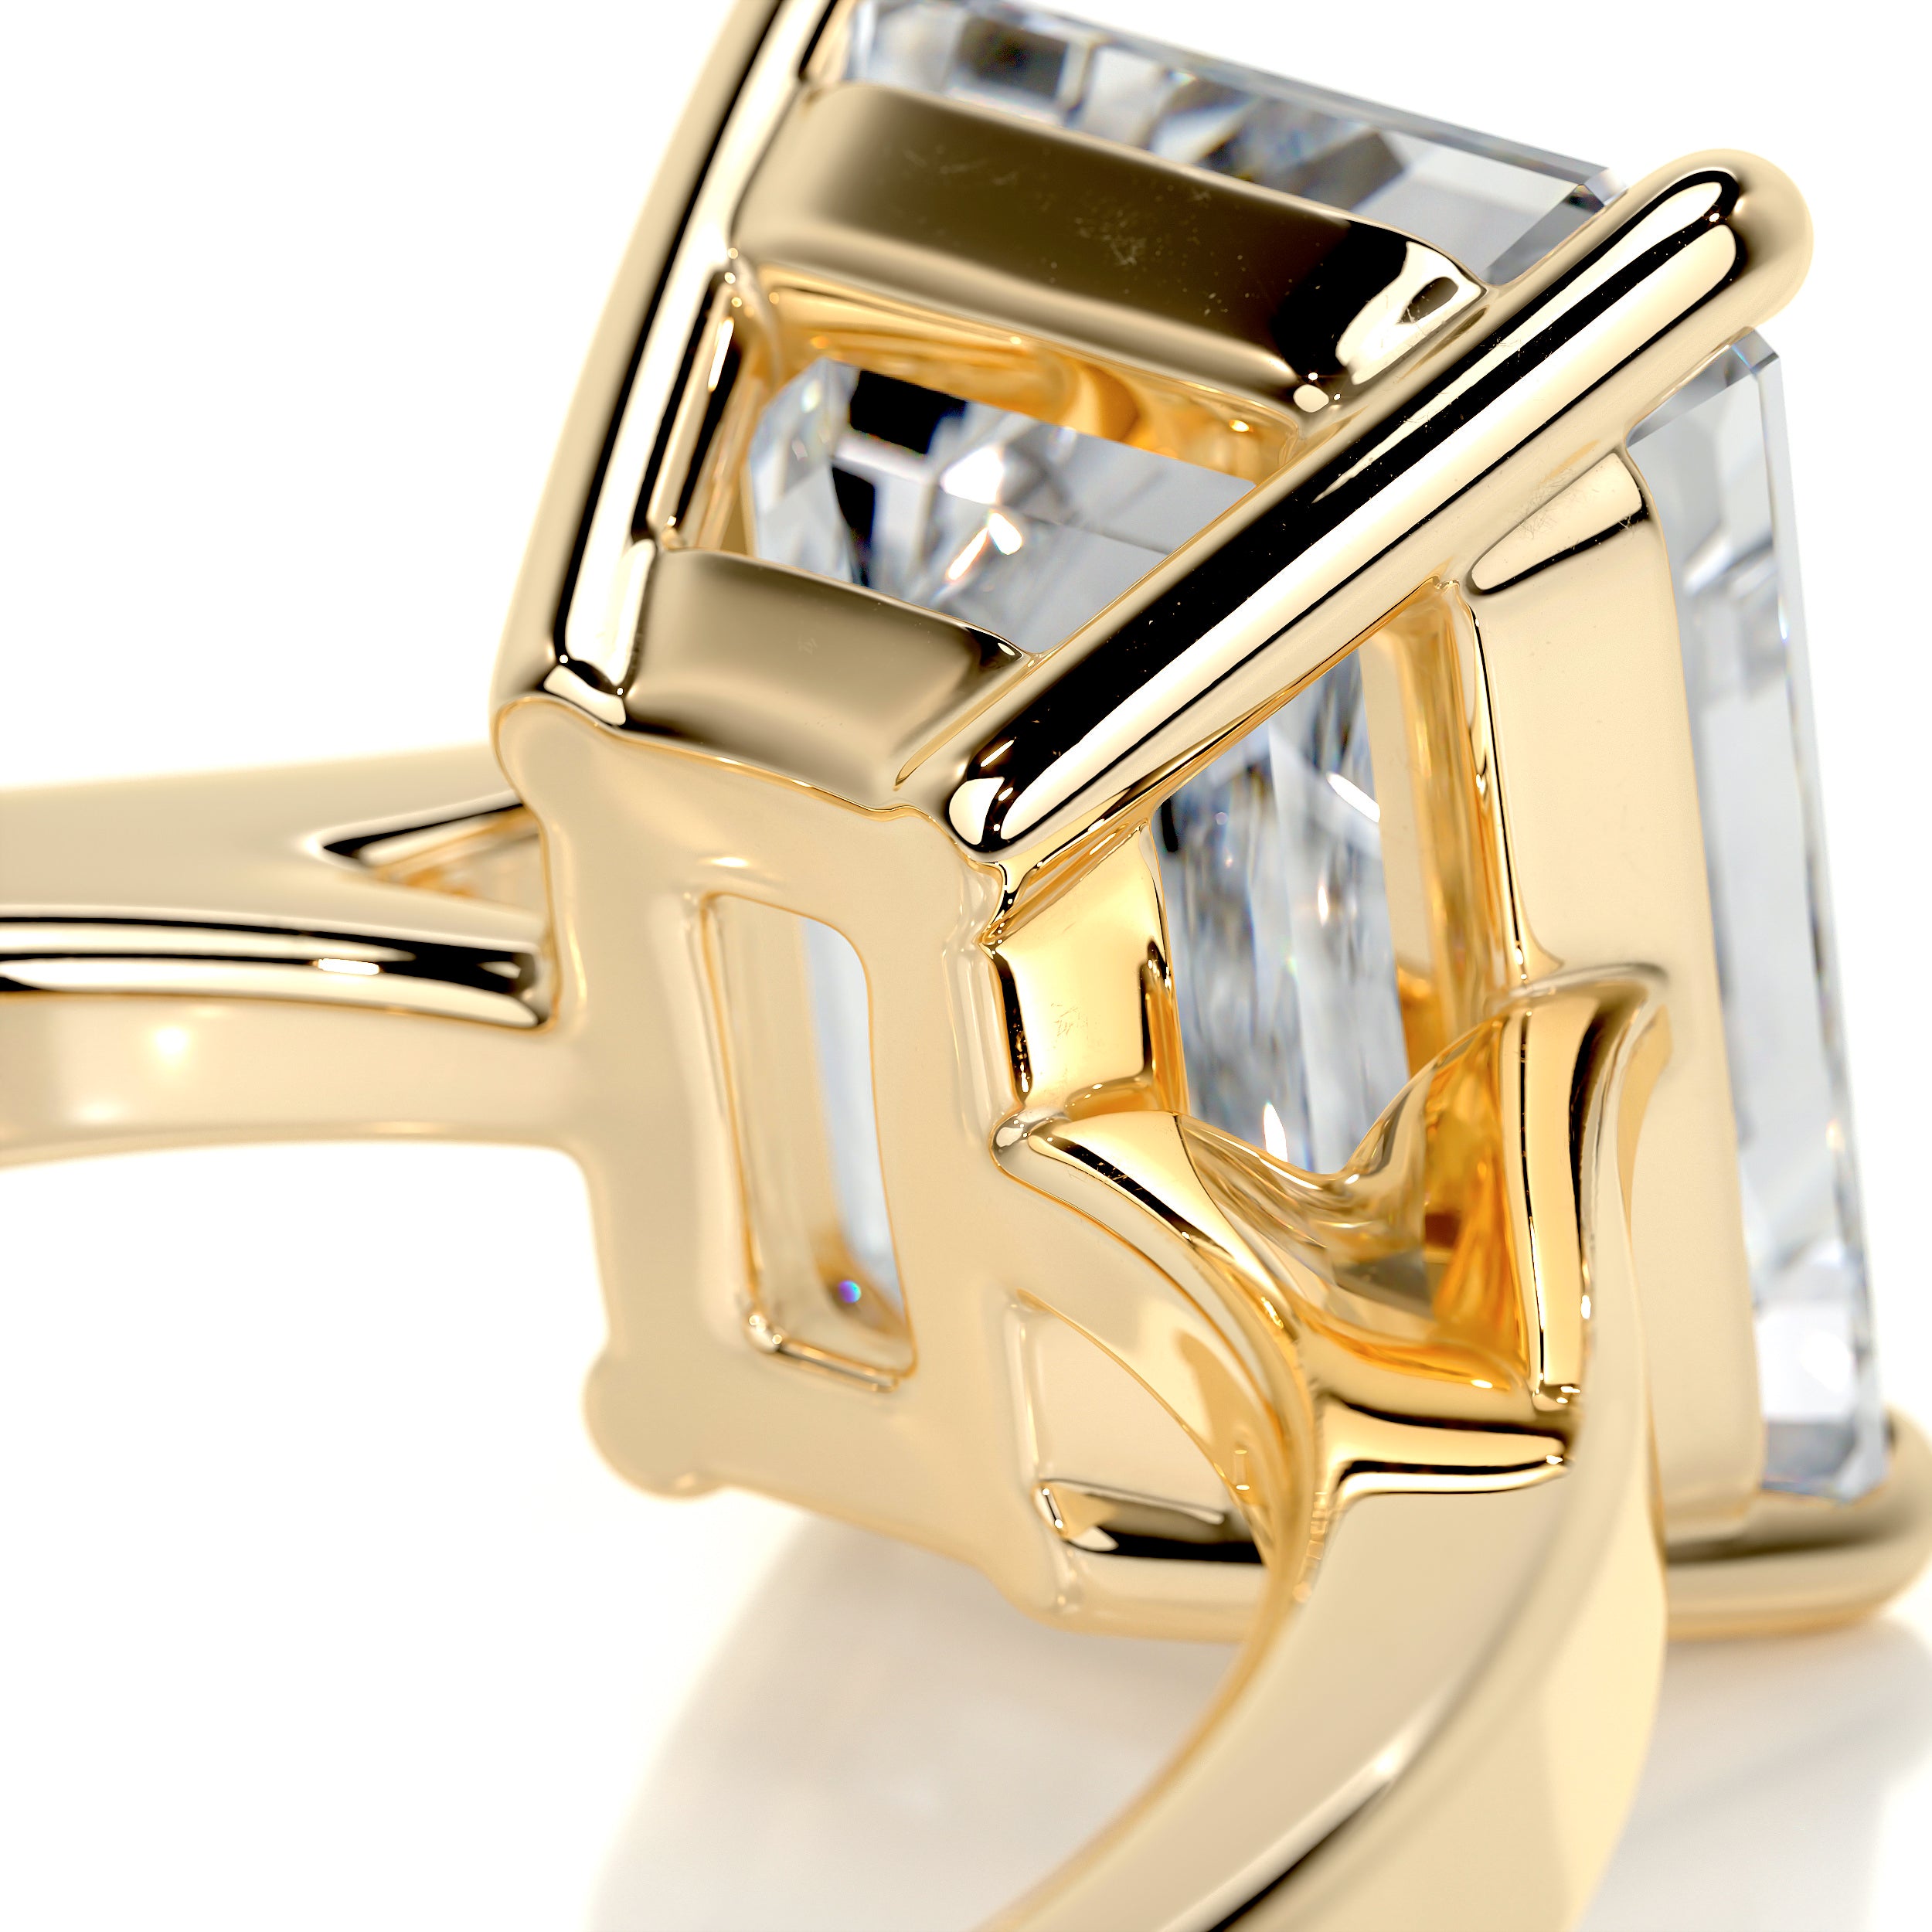 Mariana Diamond Engagement Ring -18K Yellow Gold